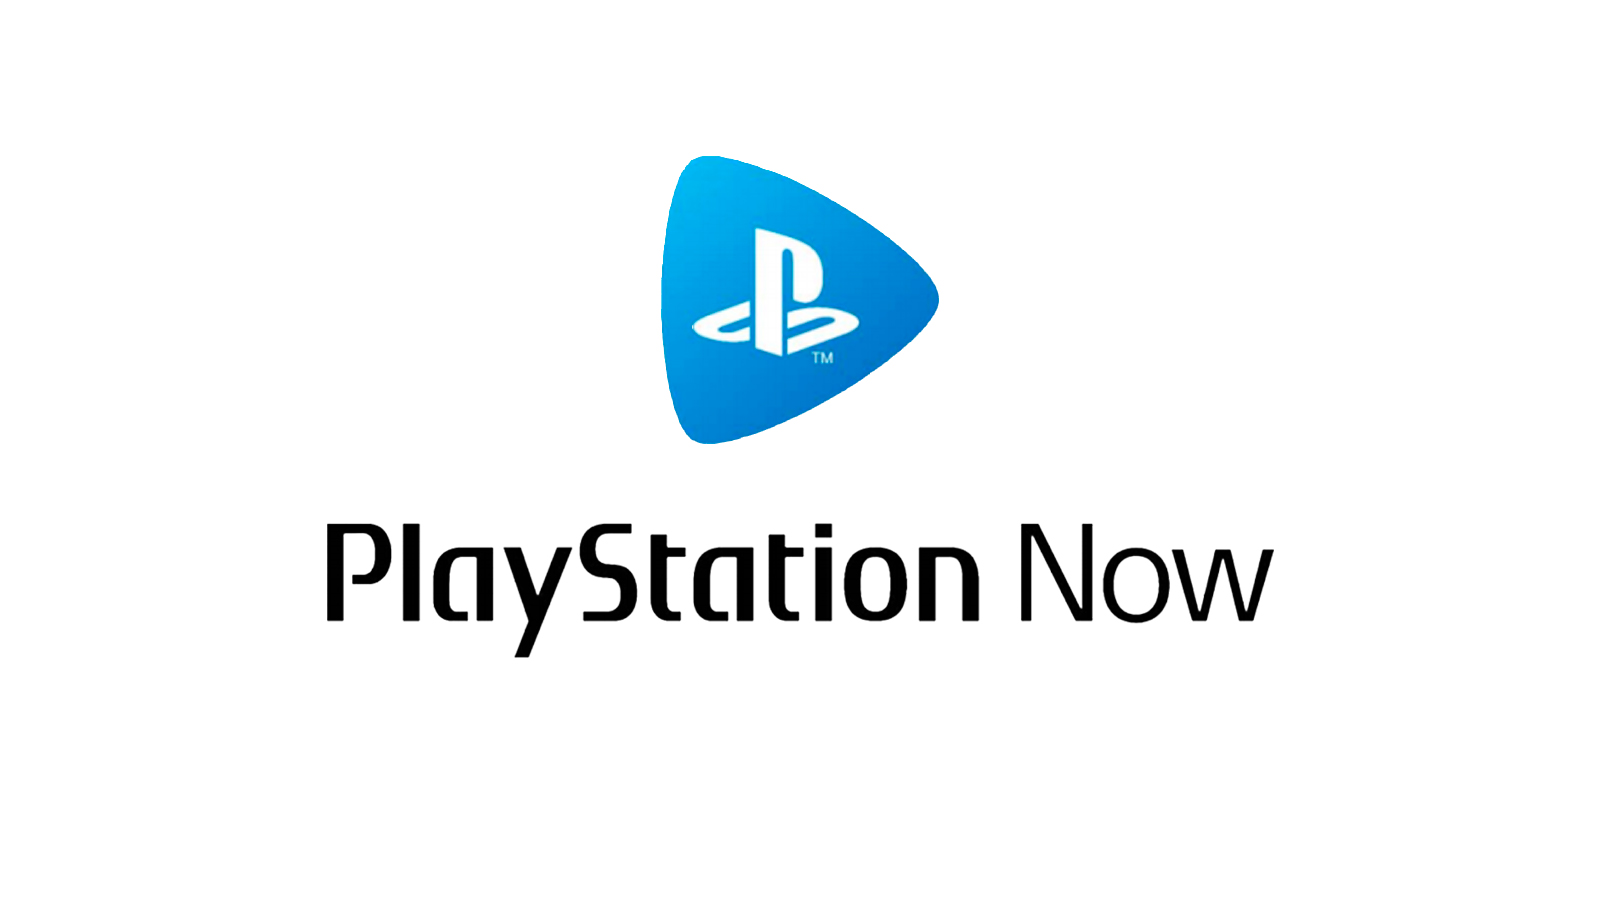 PlayStation Now : la résolution 1080p en streaming arrive bientôt